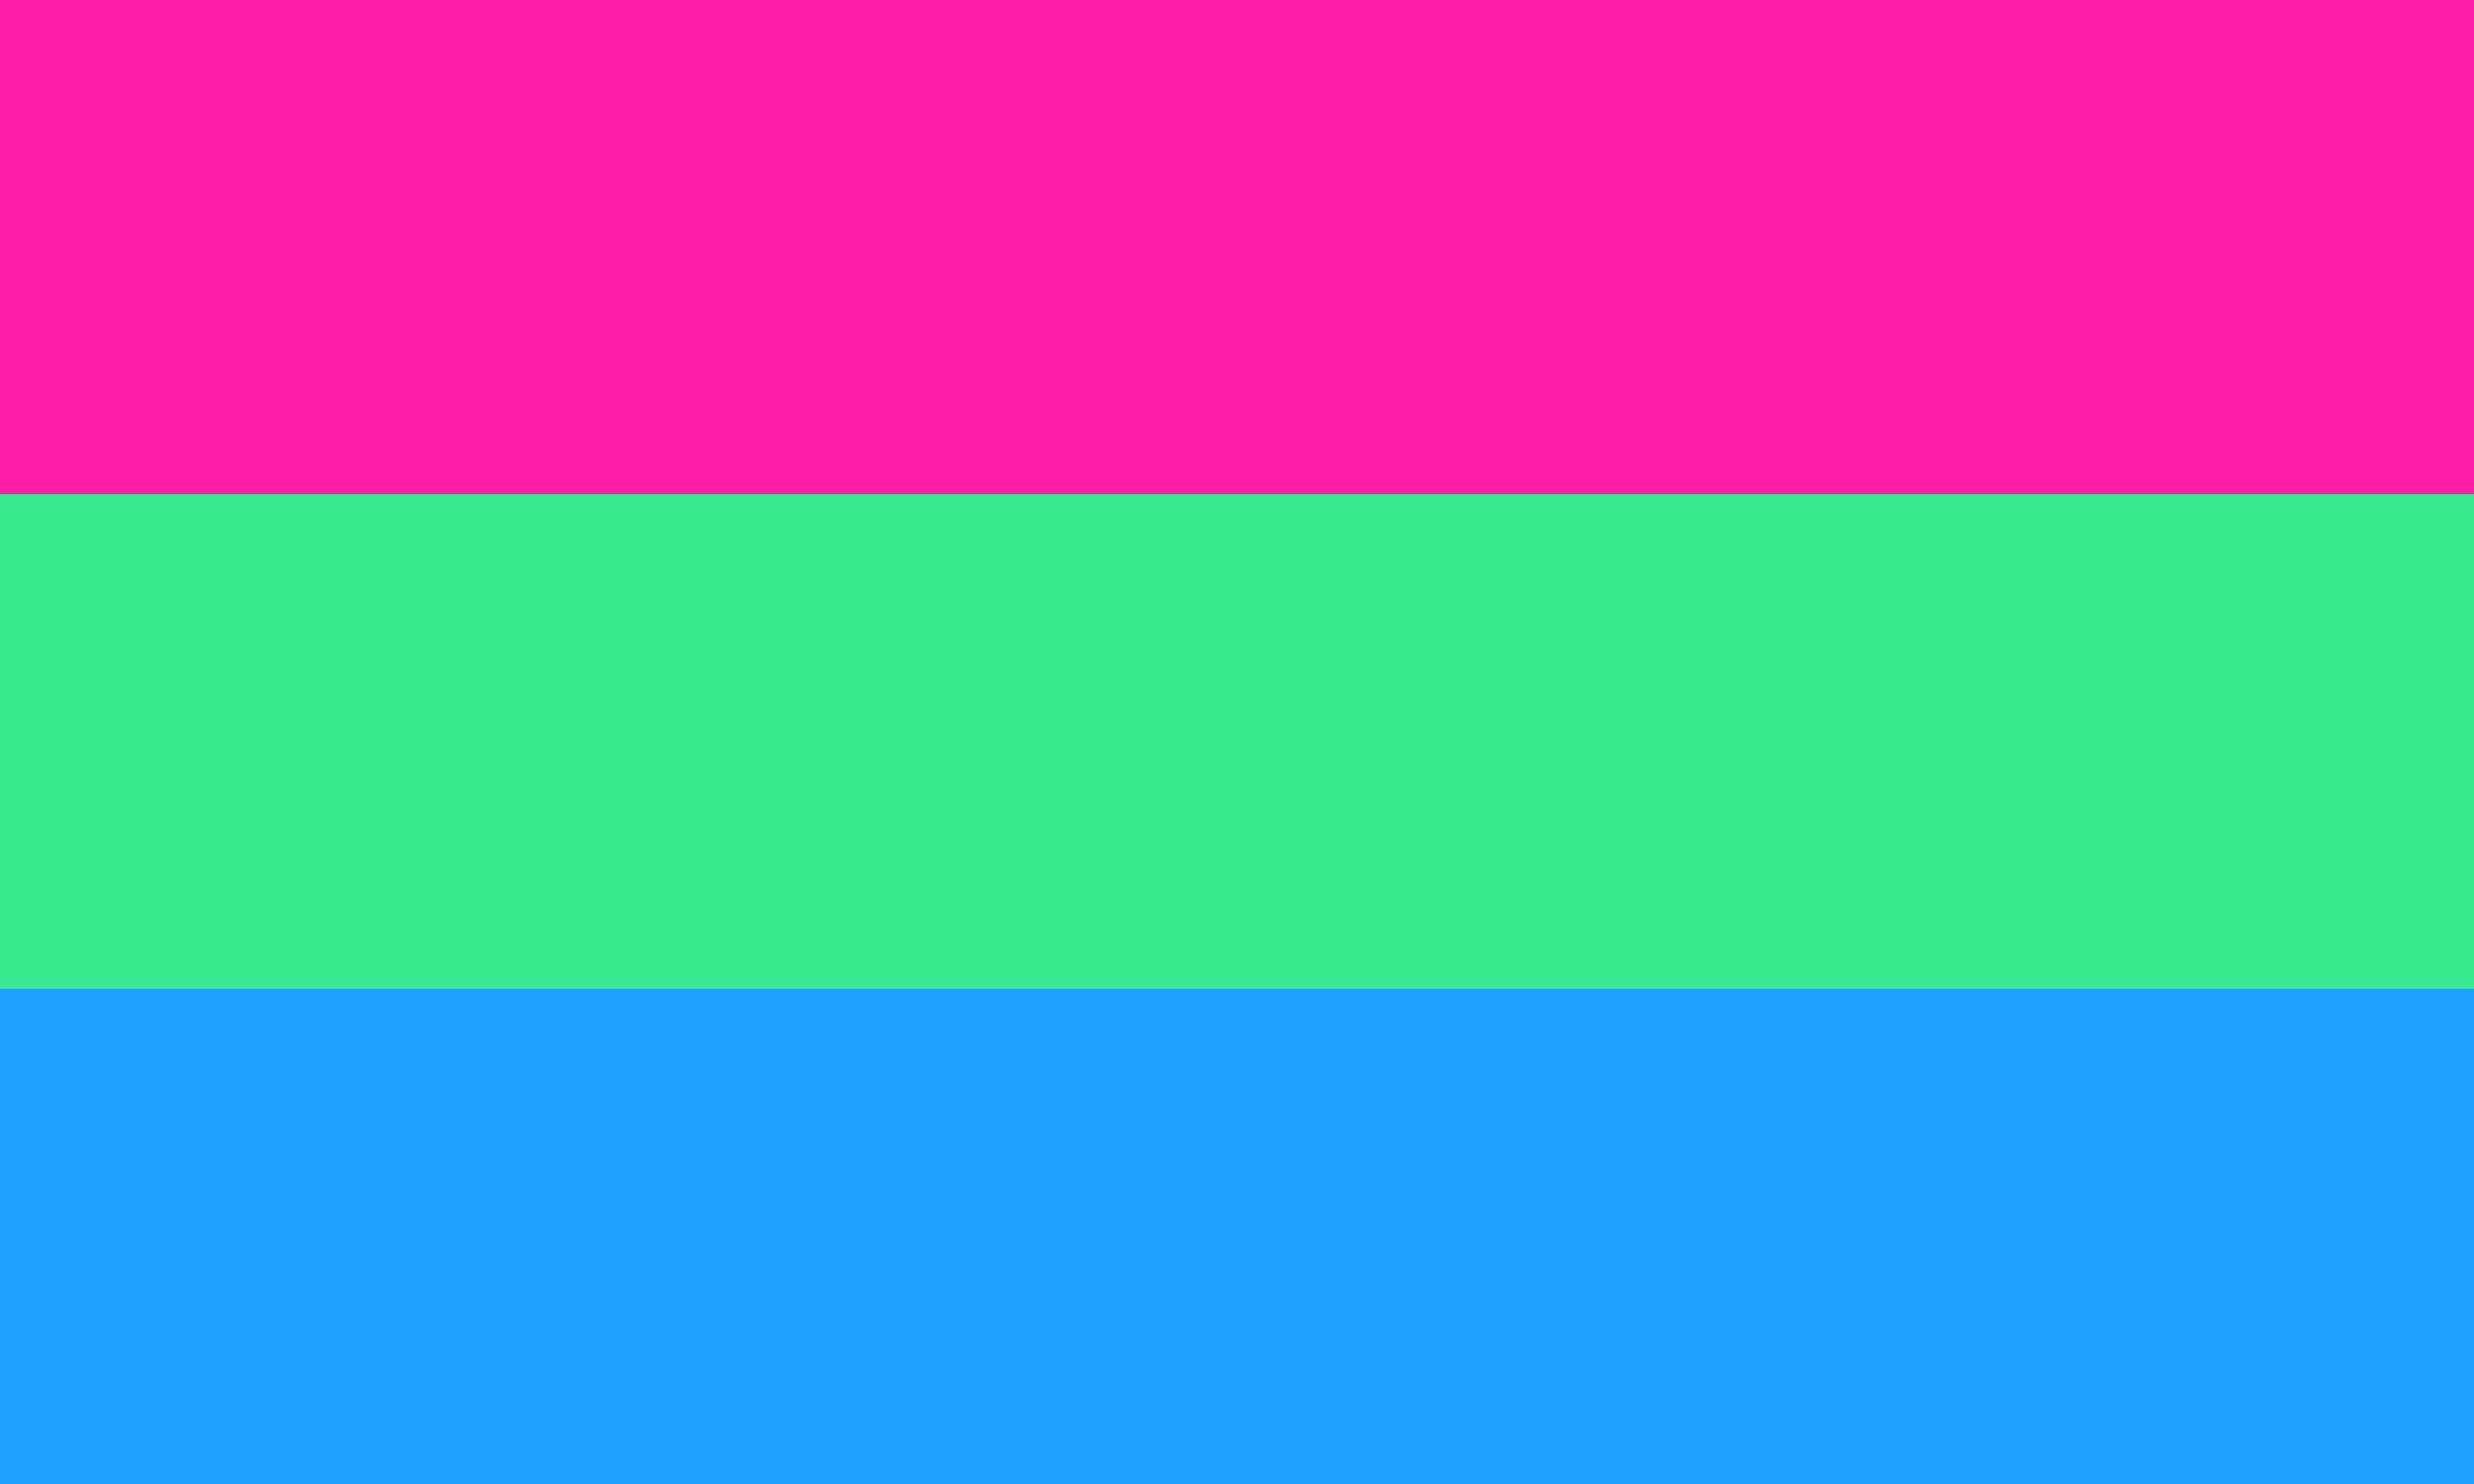 Bandeira polissexual com as cores rosa, verde-água e azul.